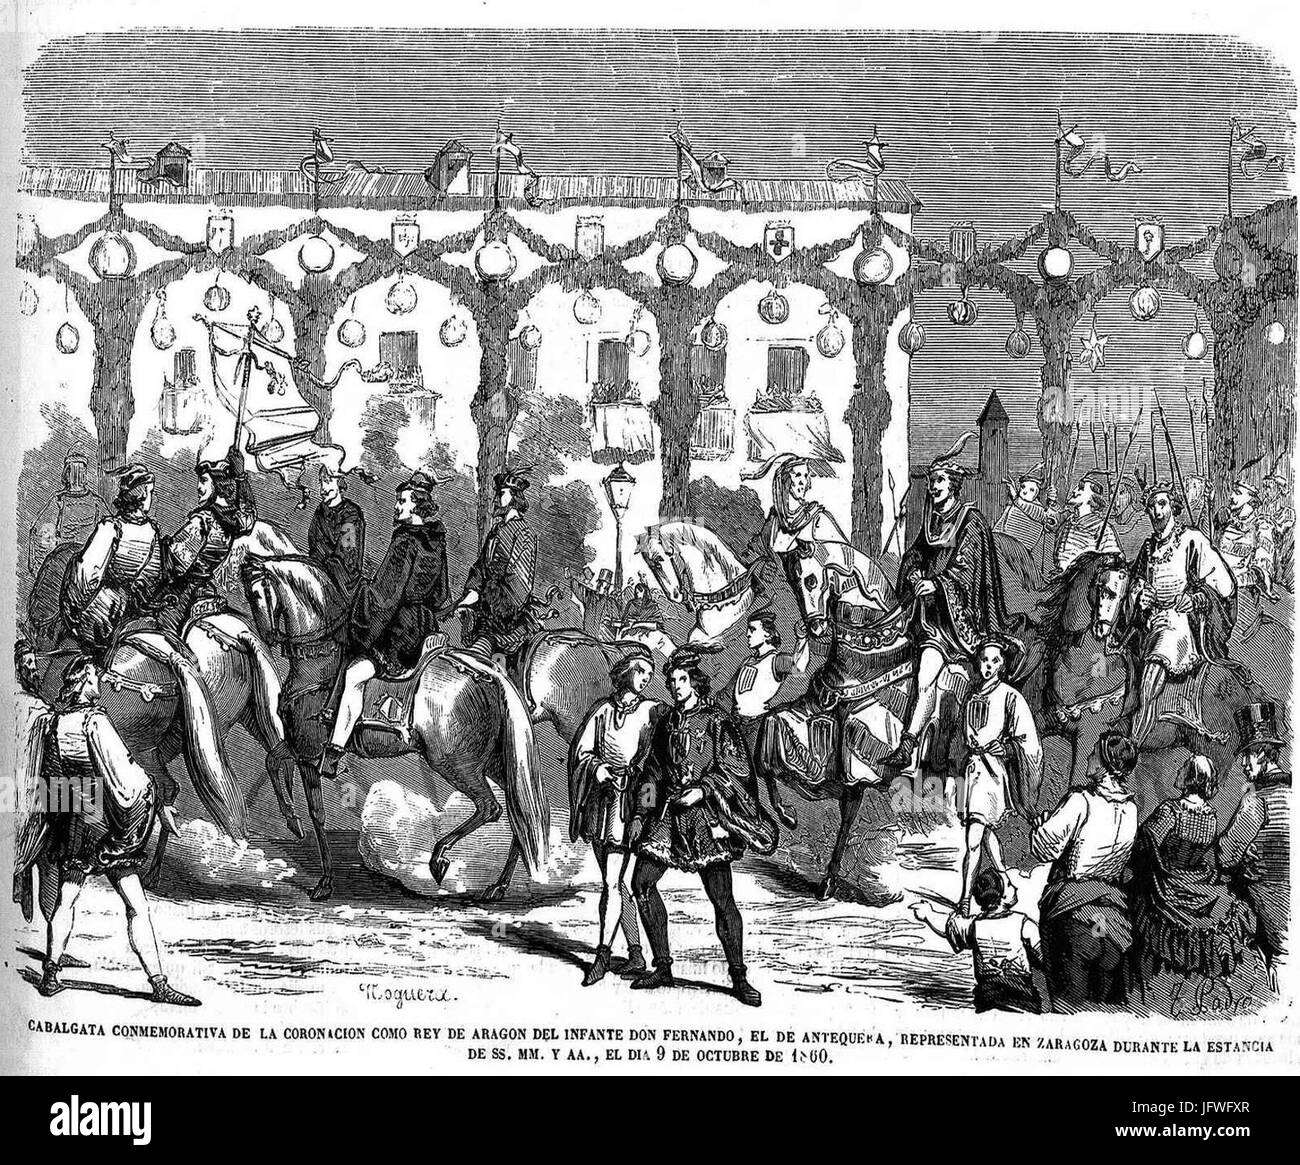 Cabalgata conmemorativa de la coronación como rey de Aragón del infante don Fernando, en Zaragoza, 9 de octubre de 1860 Stock Photo